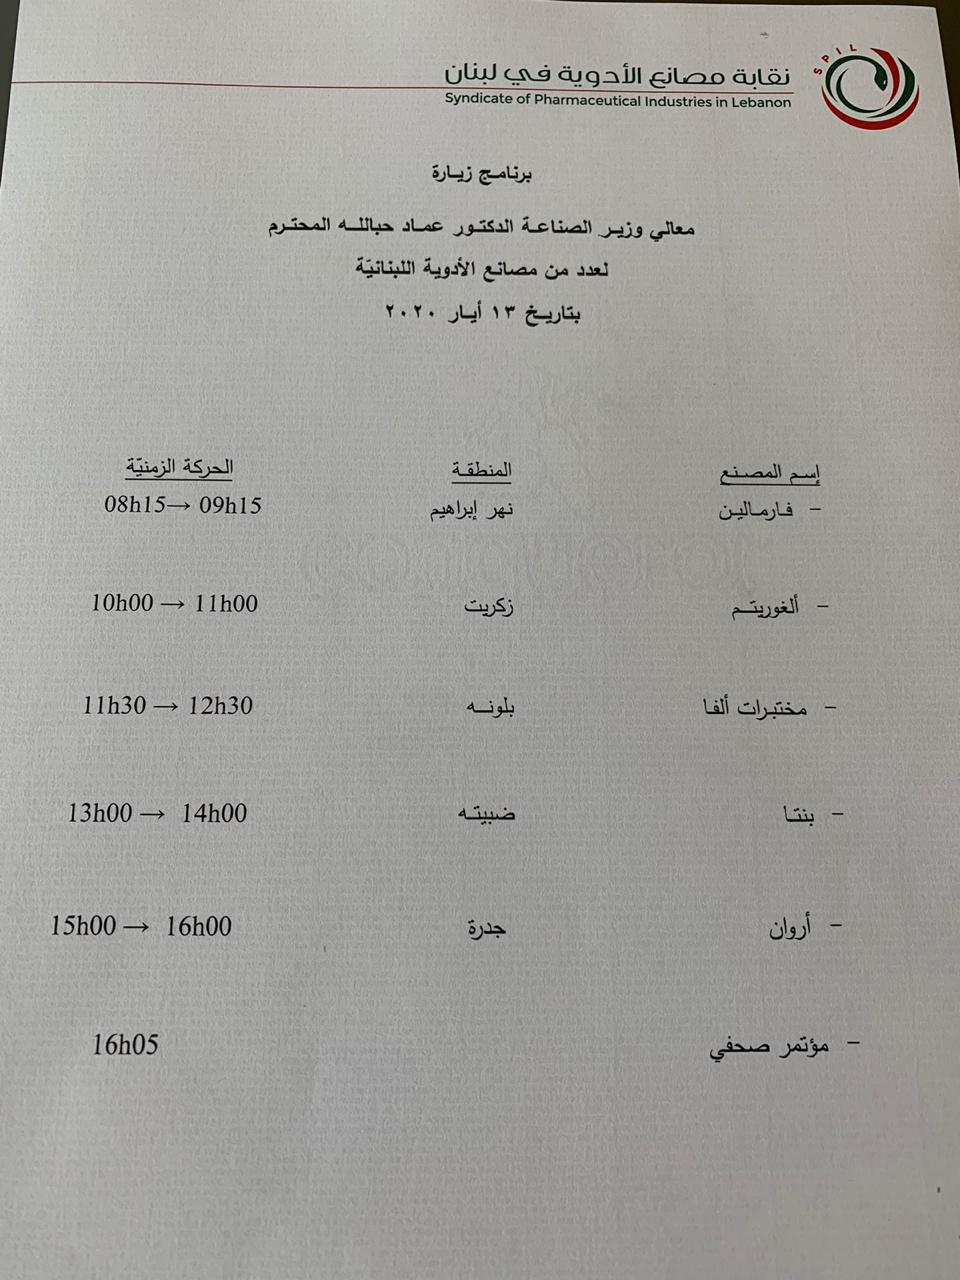 برنامج زيارة وزير الصناعة لعدد من مصانع الادوية اللبنانية بتاريخ 13 أيار 2020